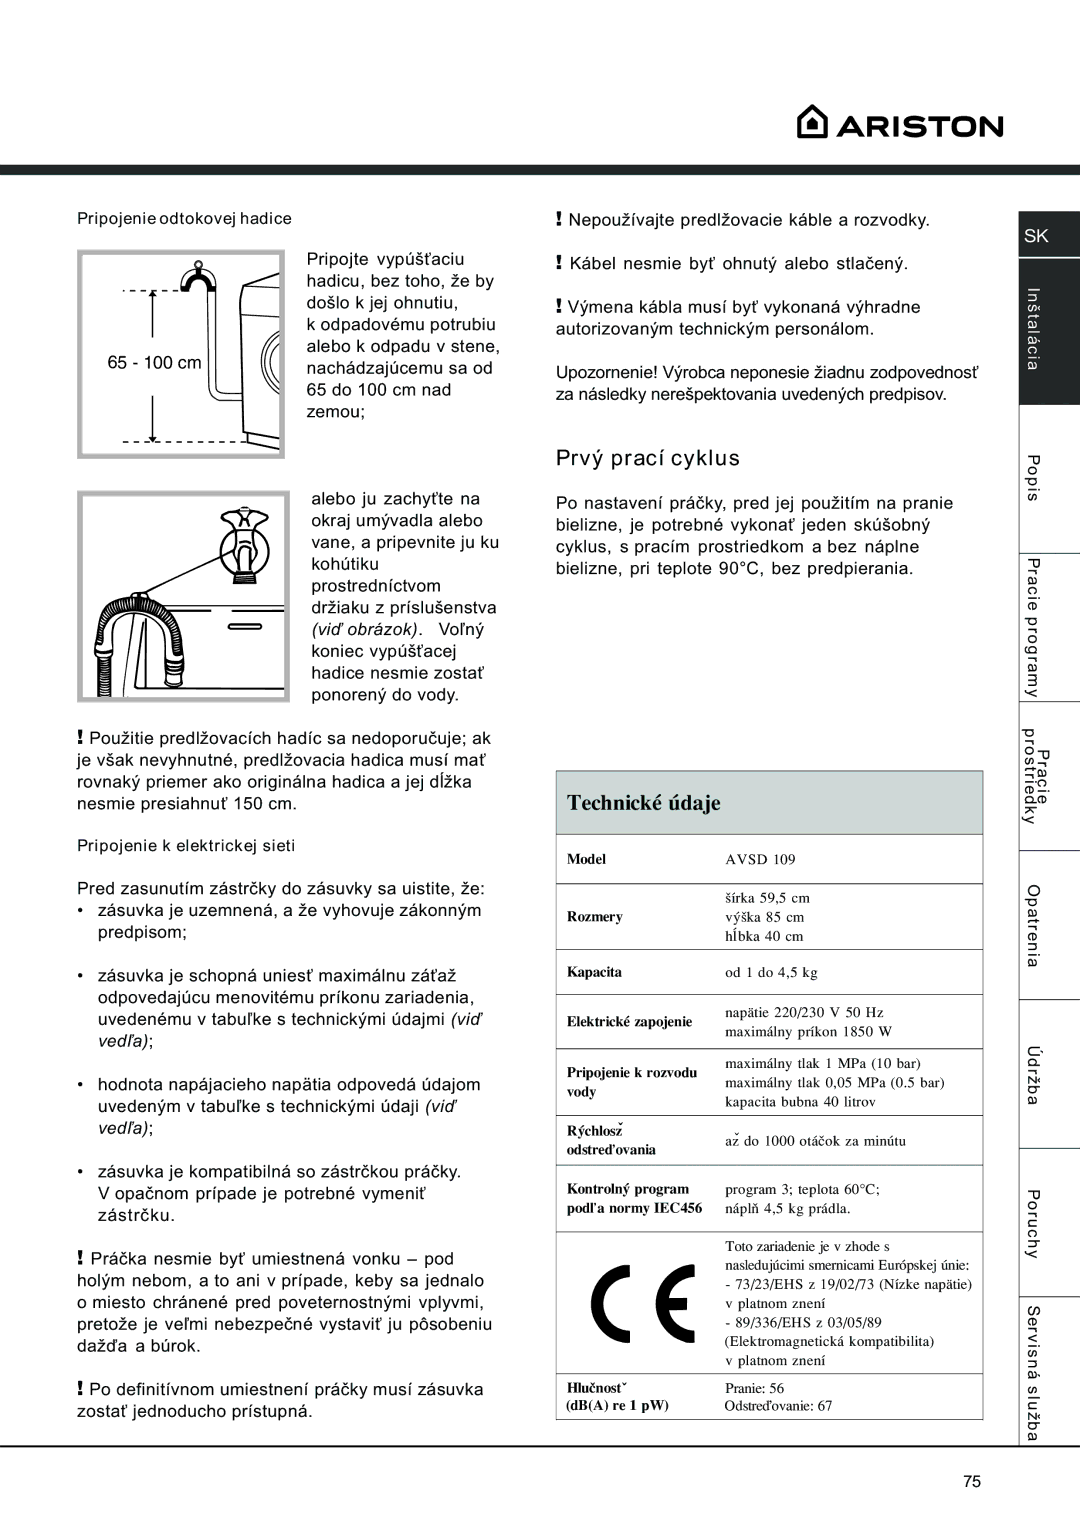 Ariston AVSD 109 manual Prvý prací cyklus, Pripojenie odtokovej hadice, Pripojenie k elektrickej sieti 